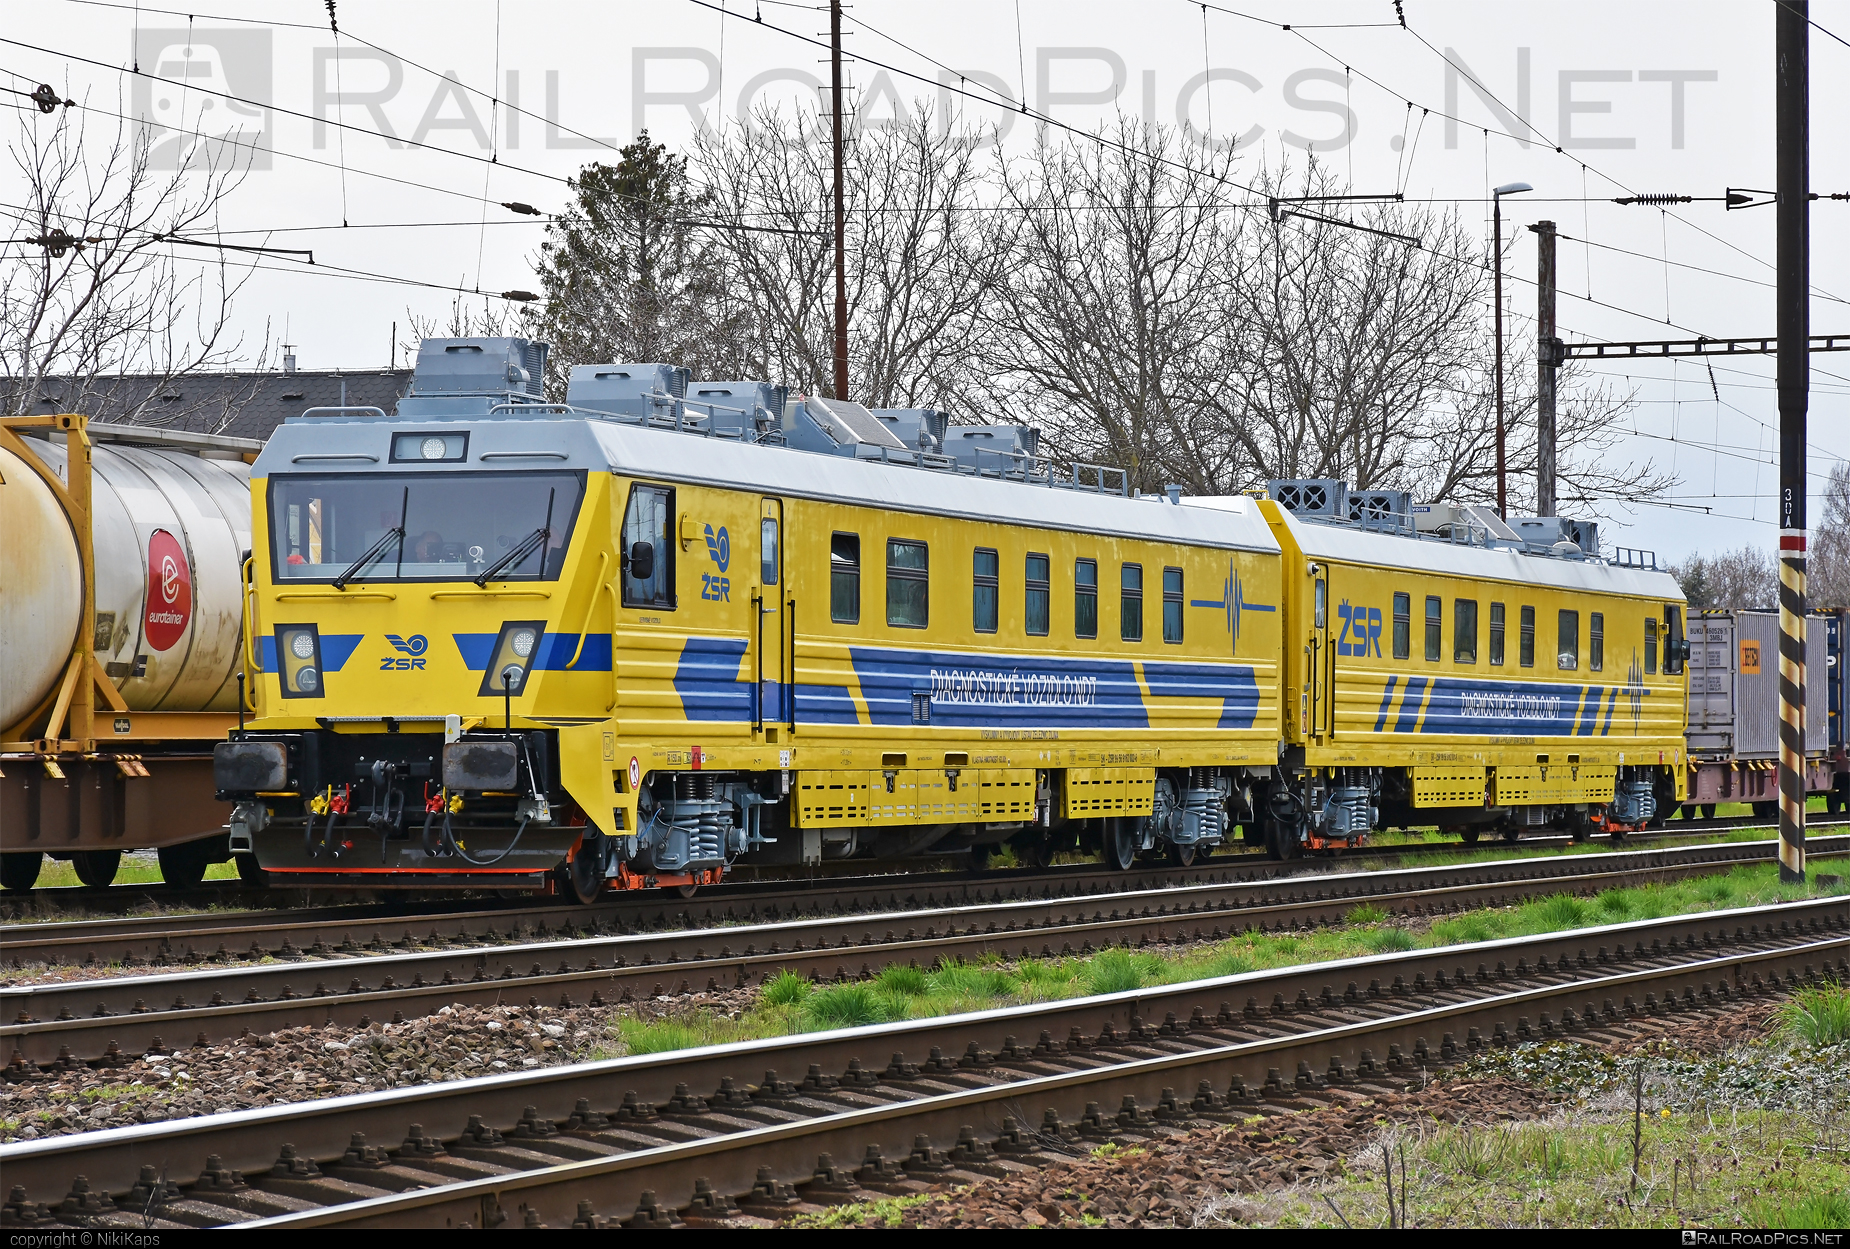 TVEMA SEVER-1435 - 162 002-6 operated by Železnice Slovenskej Republiky #sever1435 #tvema #tvemaSever1435 #zelezniceslovenskejrepubliky #zsr